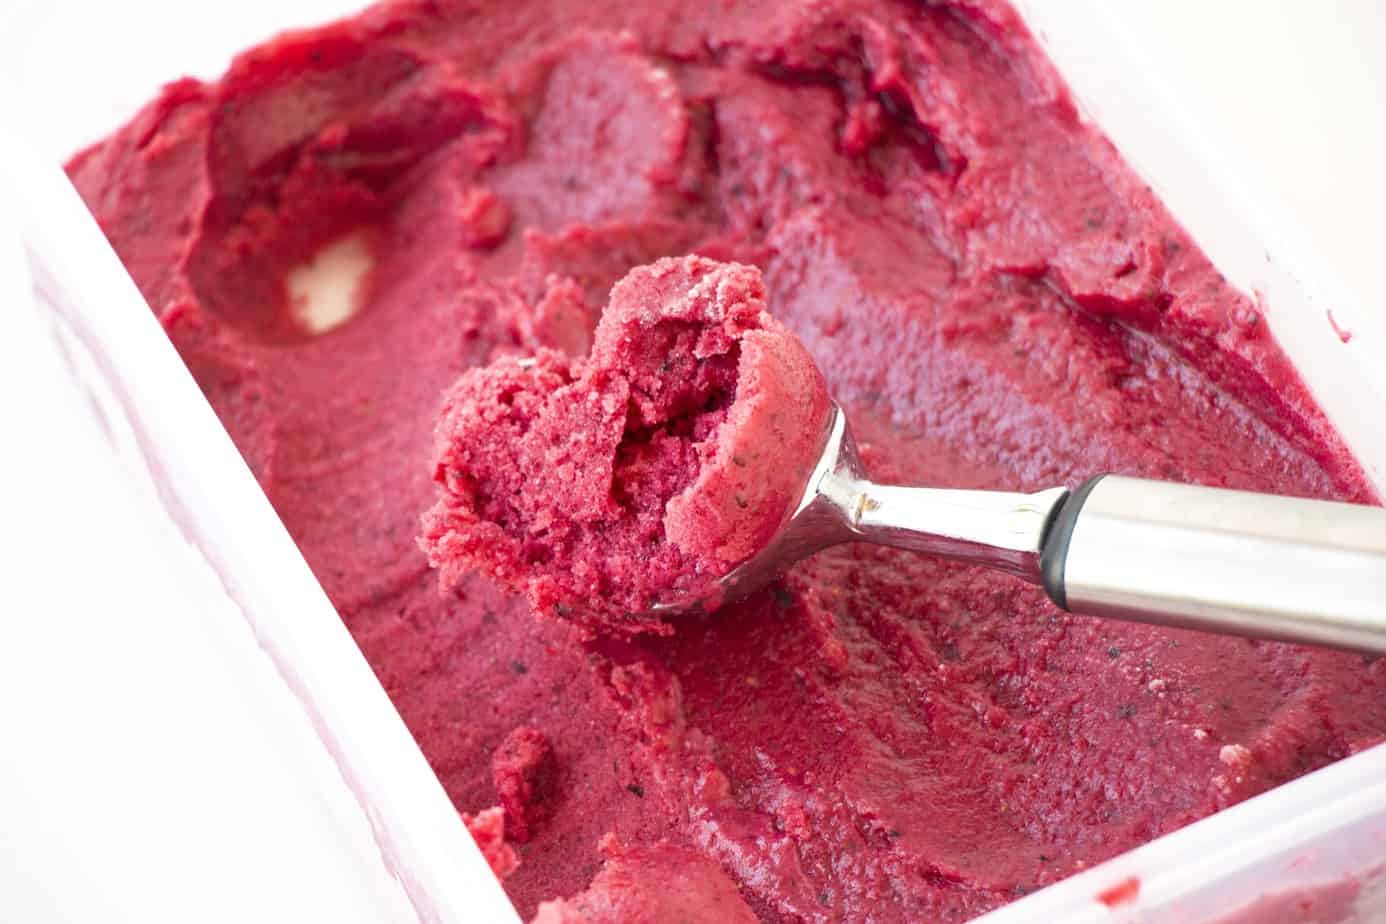 Mixed berry frozen yogurt with a metal scoop.